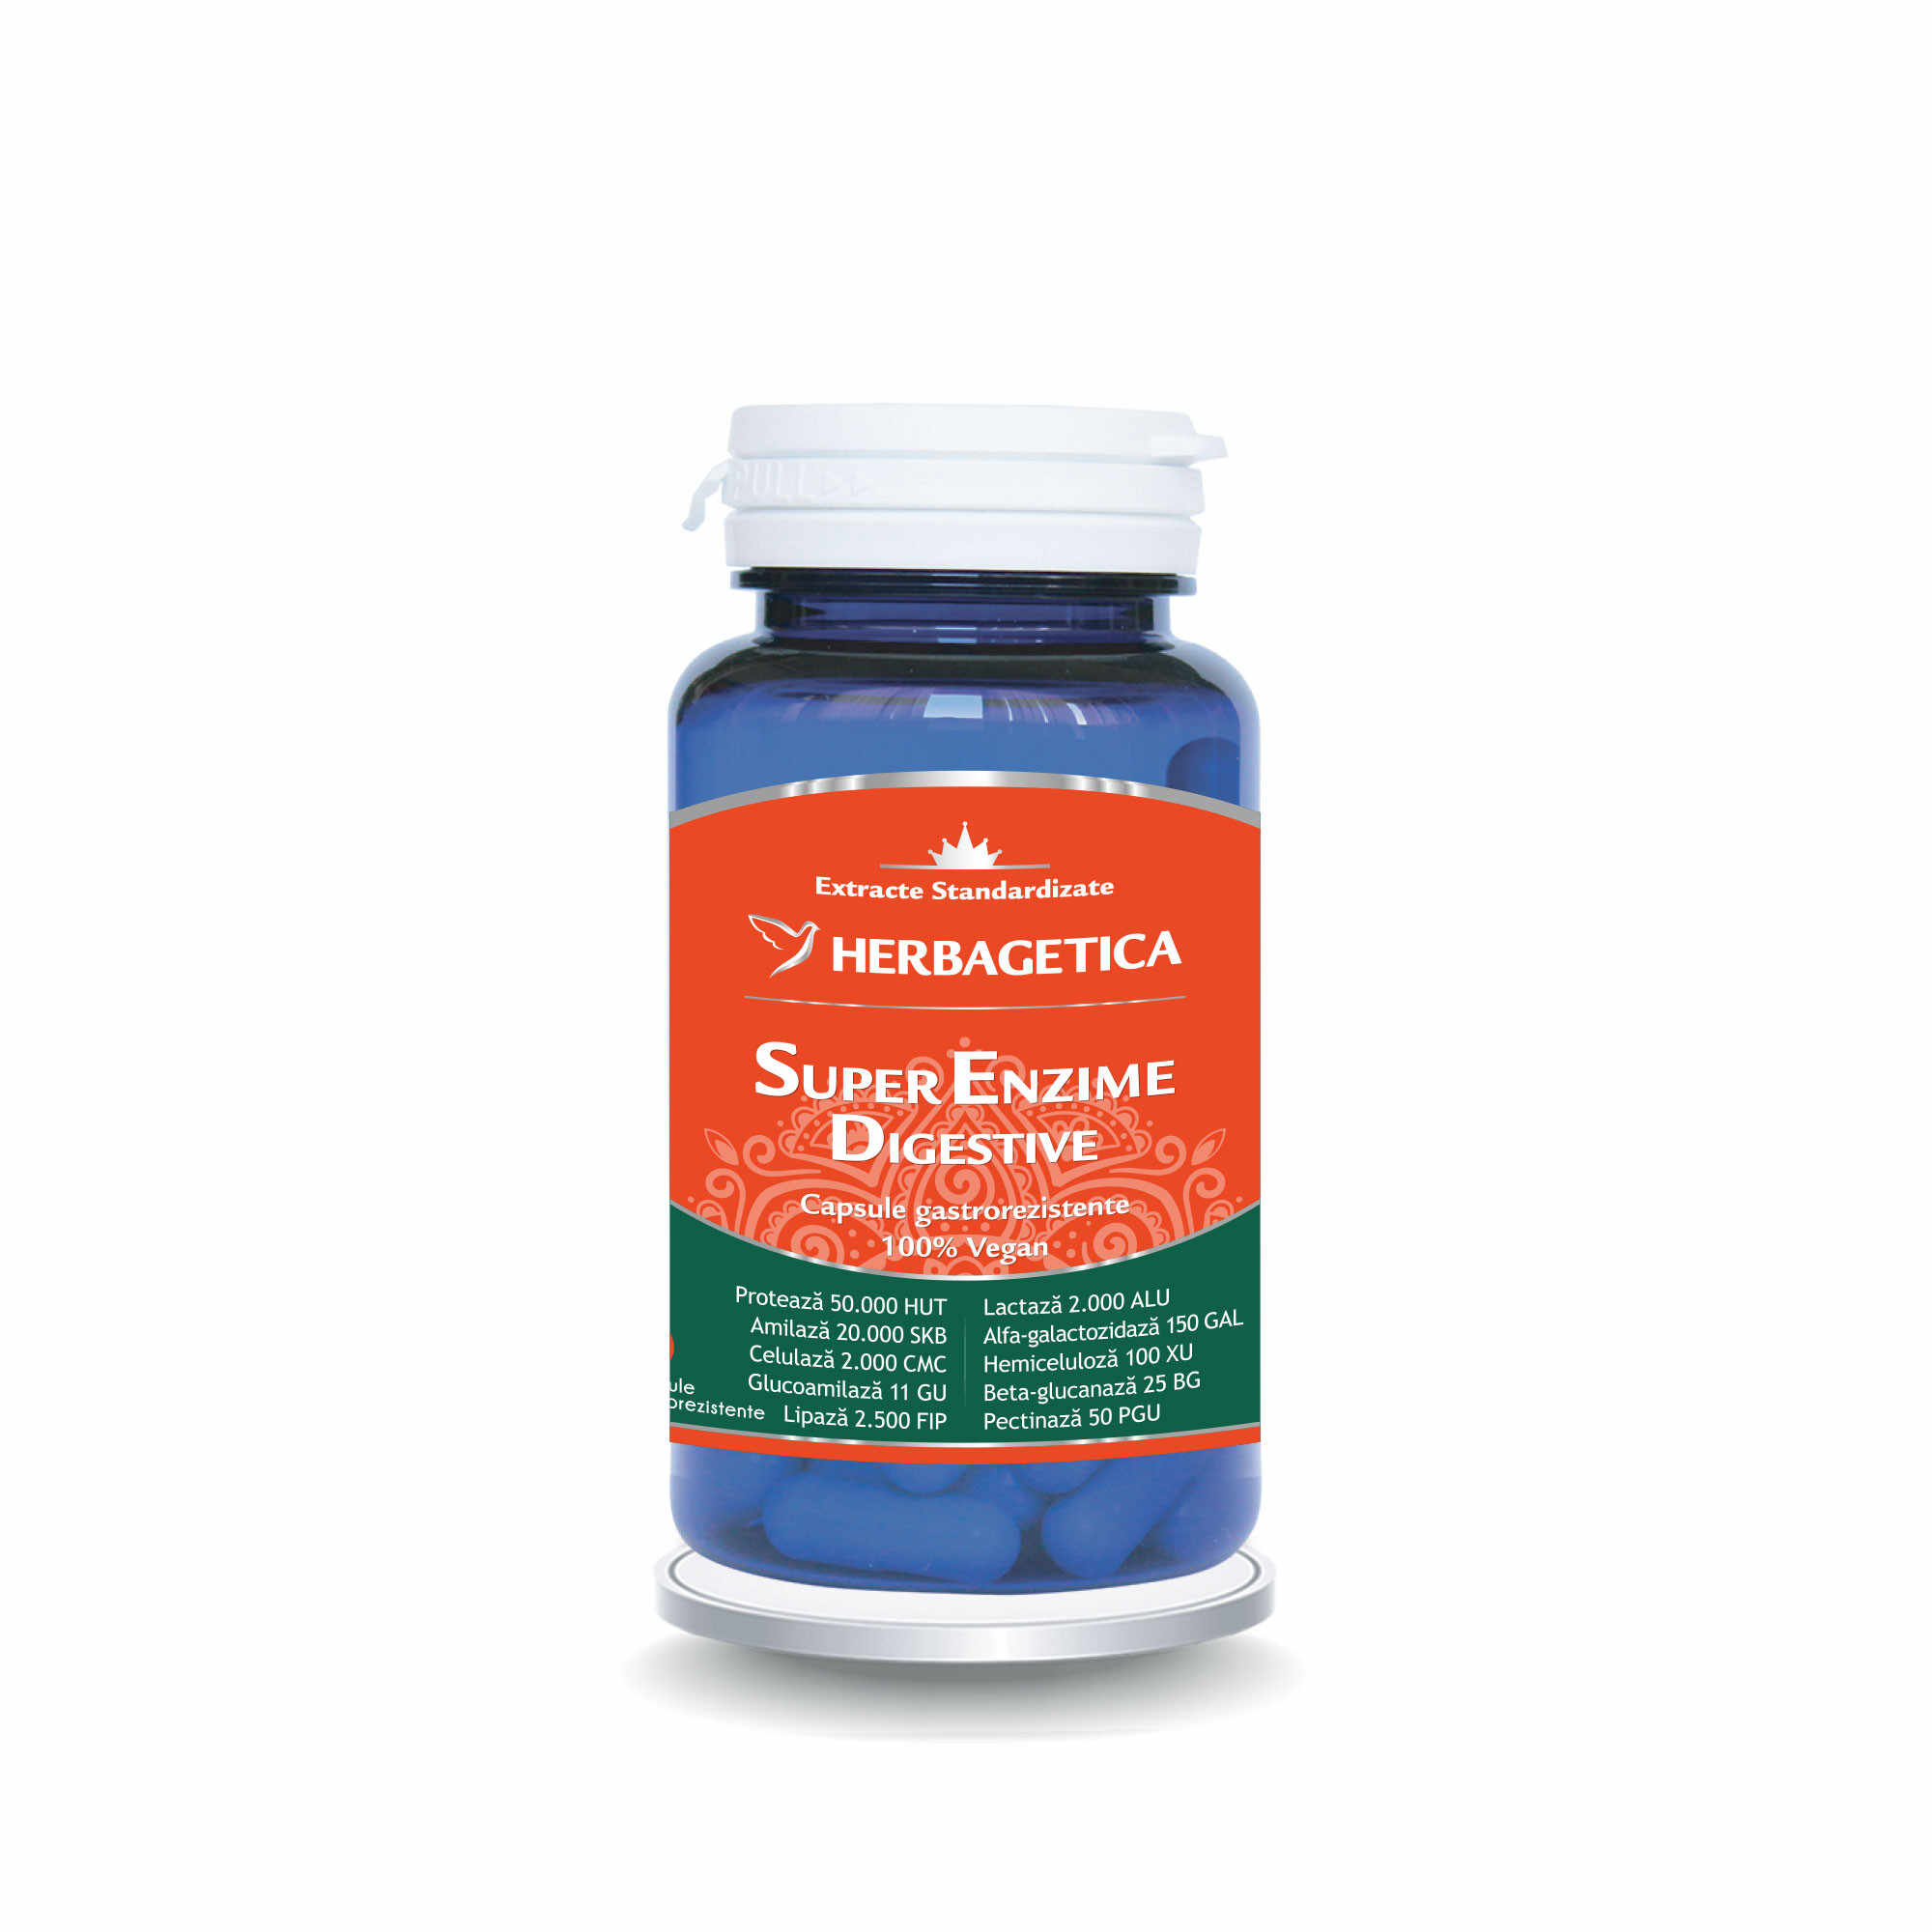 Herbagetica Super Enzime Digestive, 10 capsule